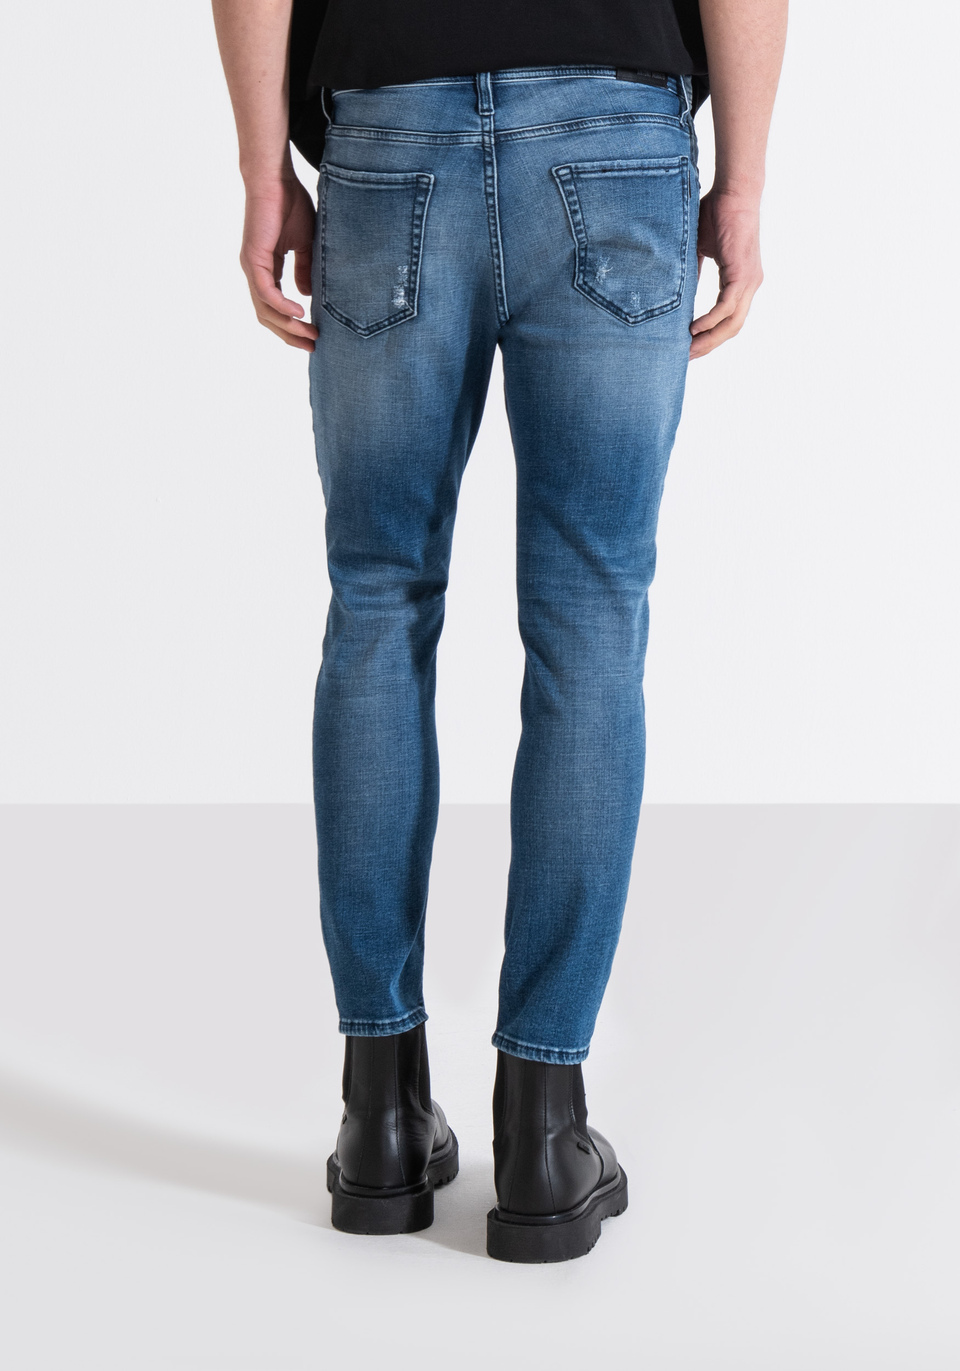 Selected Femme flared jeans in dark blue denim for women